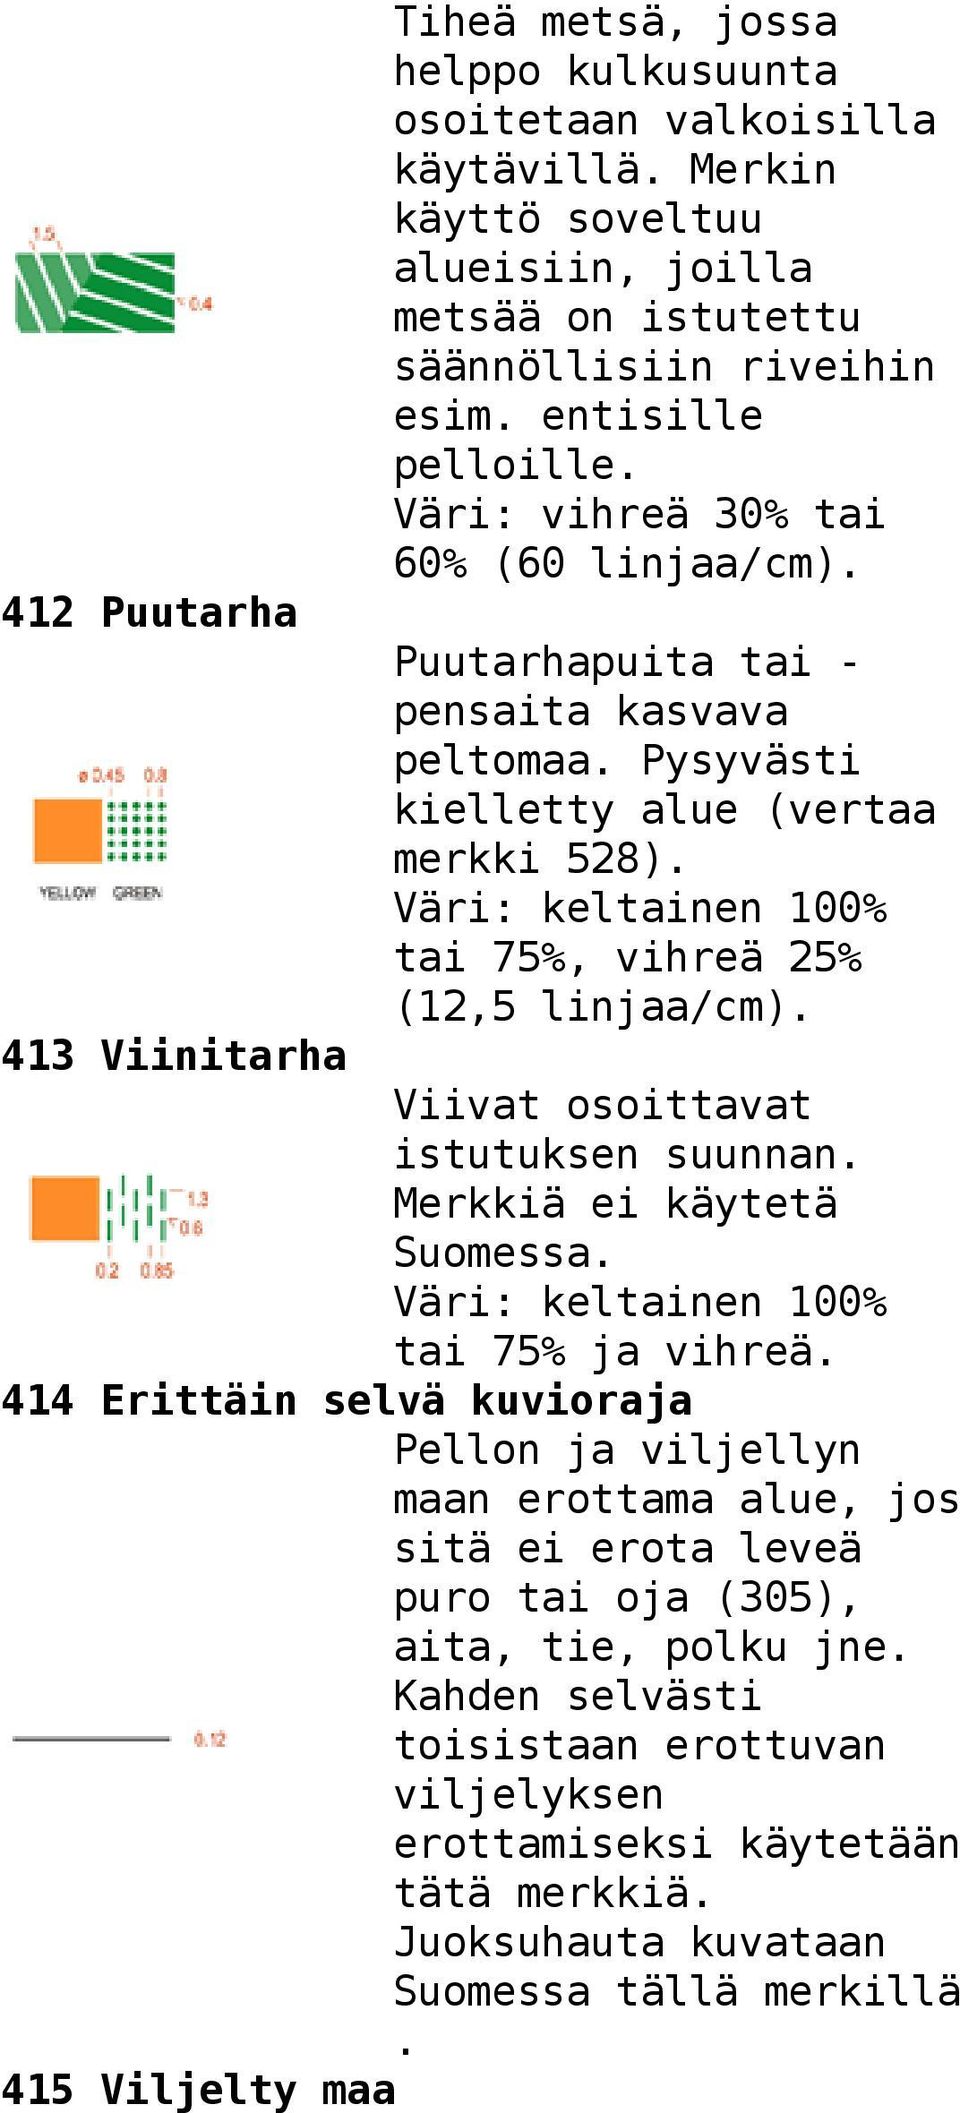 Väri: keltainen 100% tai 75%, vihreä 25% (12,5 413 Viinitarha Viivat osoittavat istutuksen suunnan. Merkkiä ei käytetä Suomessa. Väri: keltainen 100% tai 75% ja vihreä.